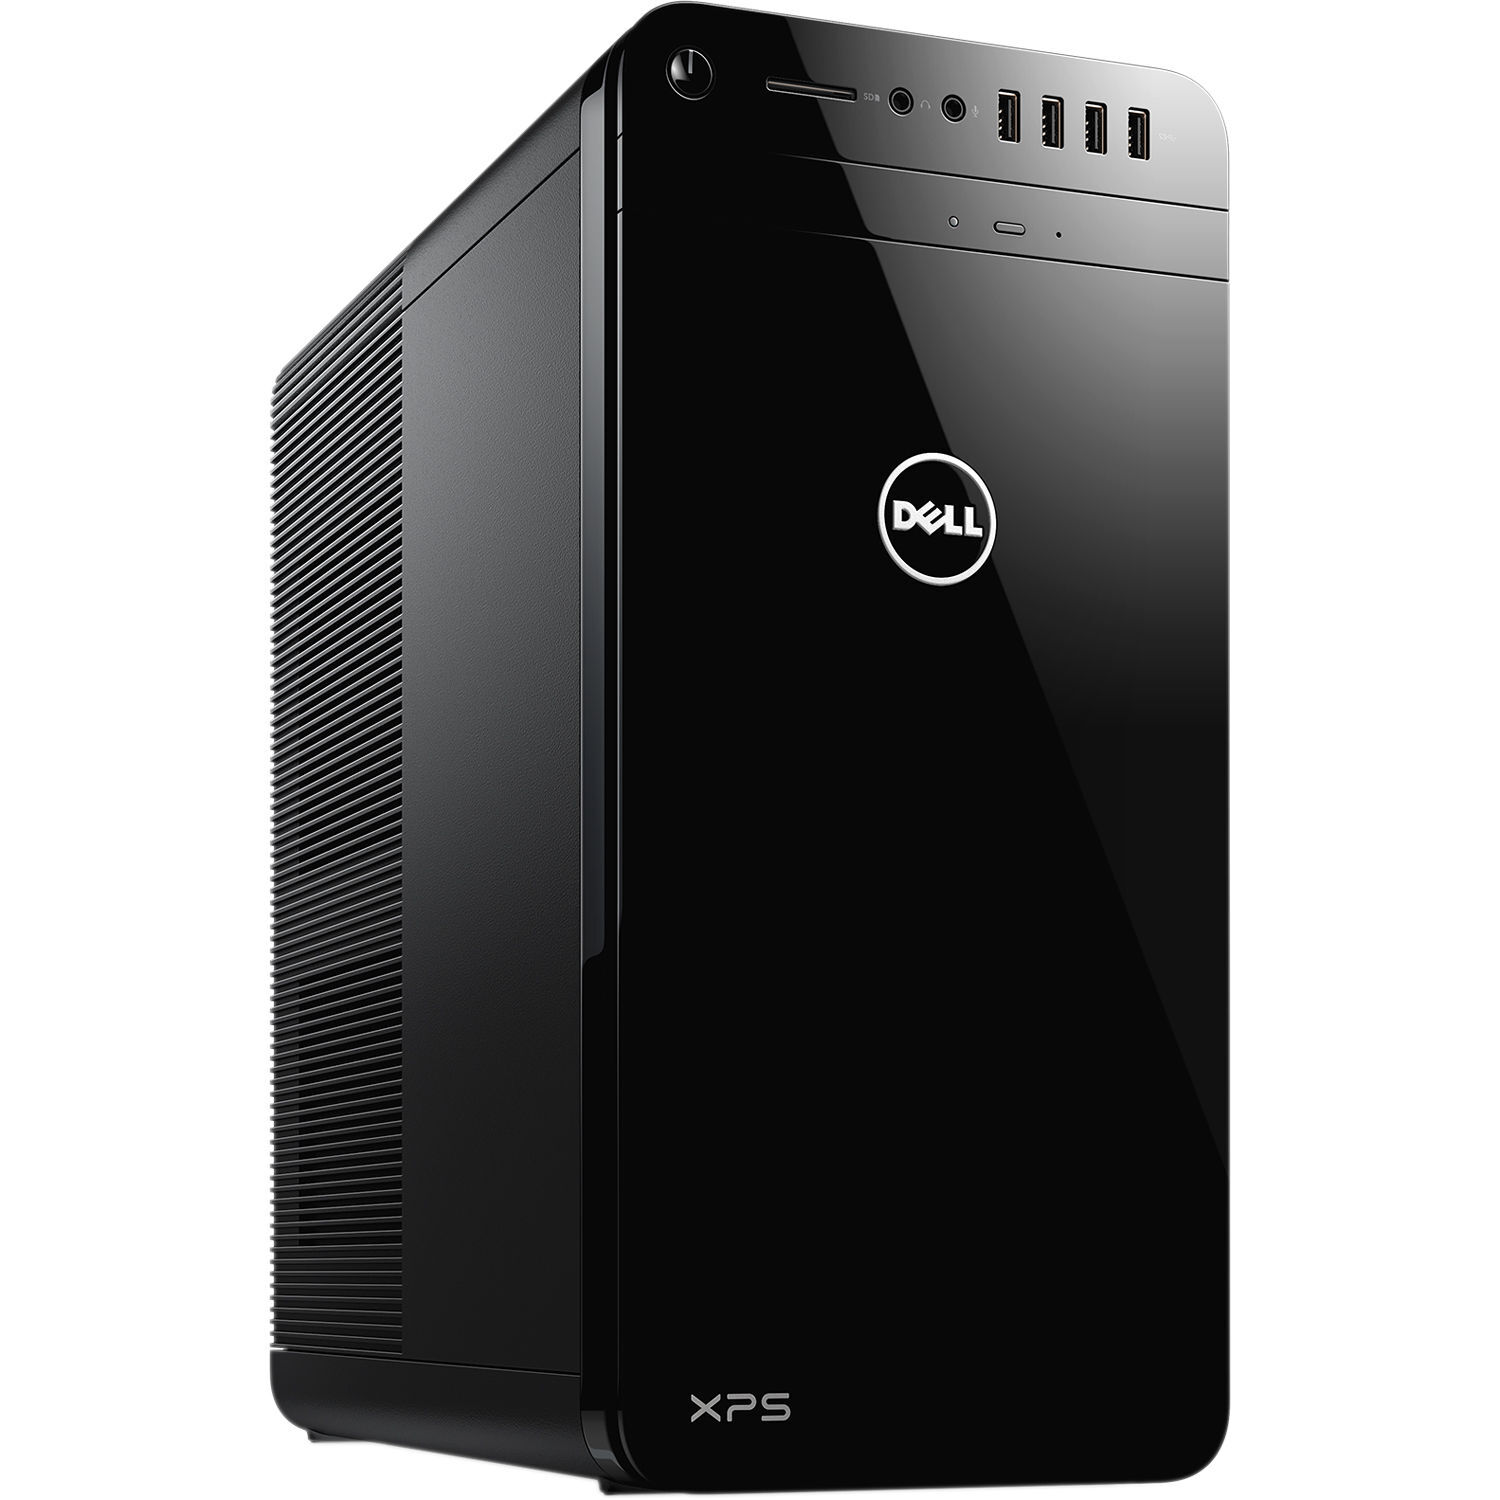 Máy tính để bàn Dell XPS 8920 70126167 - Intel core i7, 16GB RAM, SSD 256GB + HDD 2TB, Nvidia GeForce GTX 1060 6GB